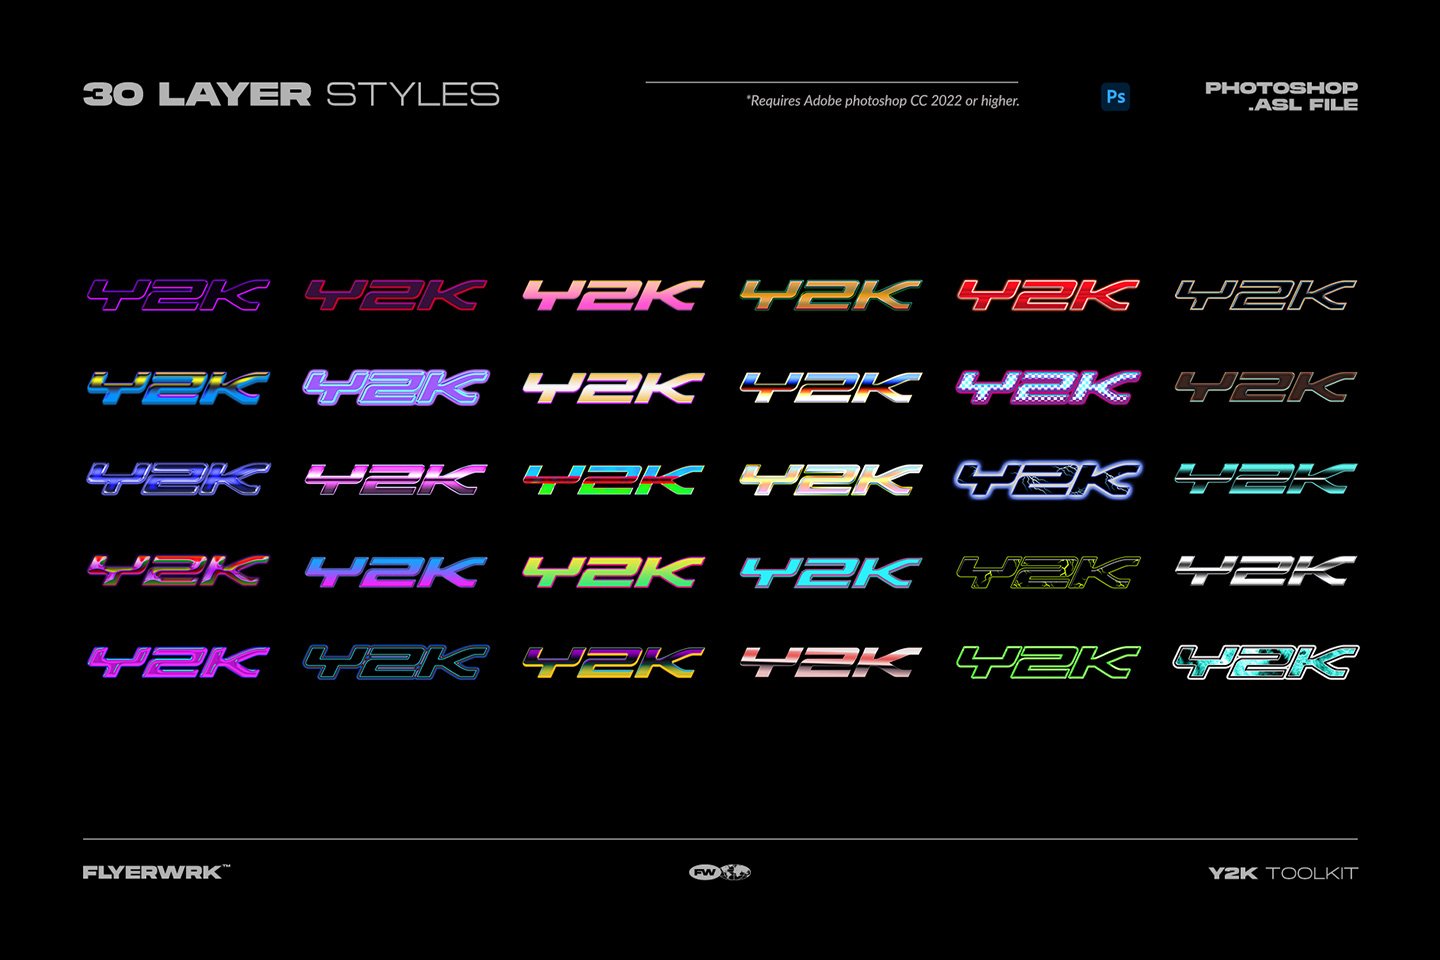 Flyerwrk 千禧年Y2K风格高质量抽象形状酸性封面艺术社交图形包 Flyerwrk–Y2K TOOLKIT 图标素材 第5张